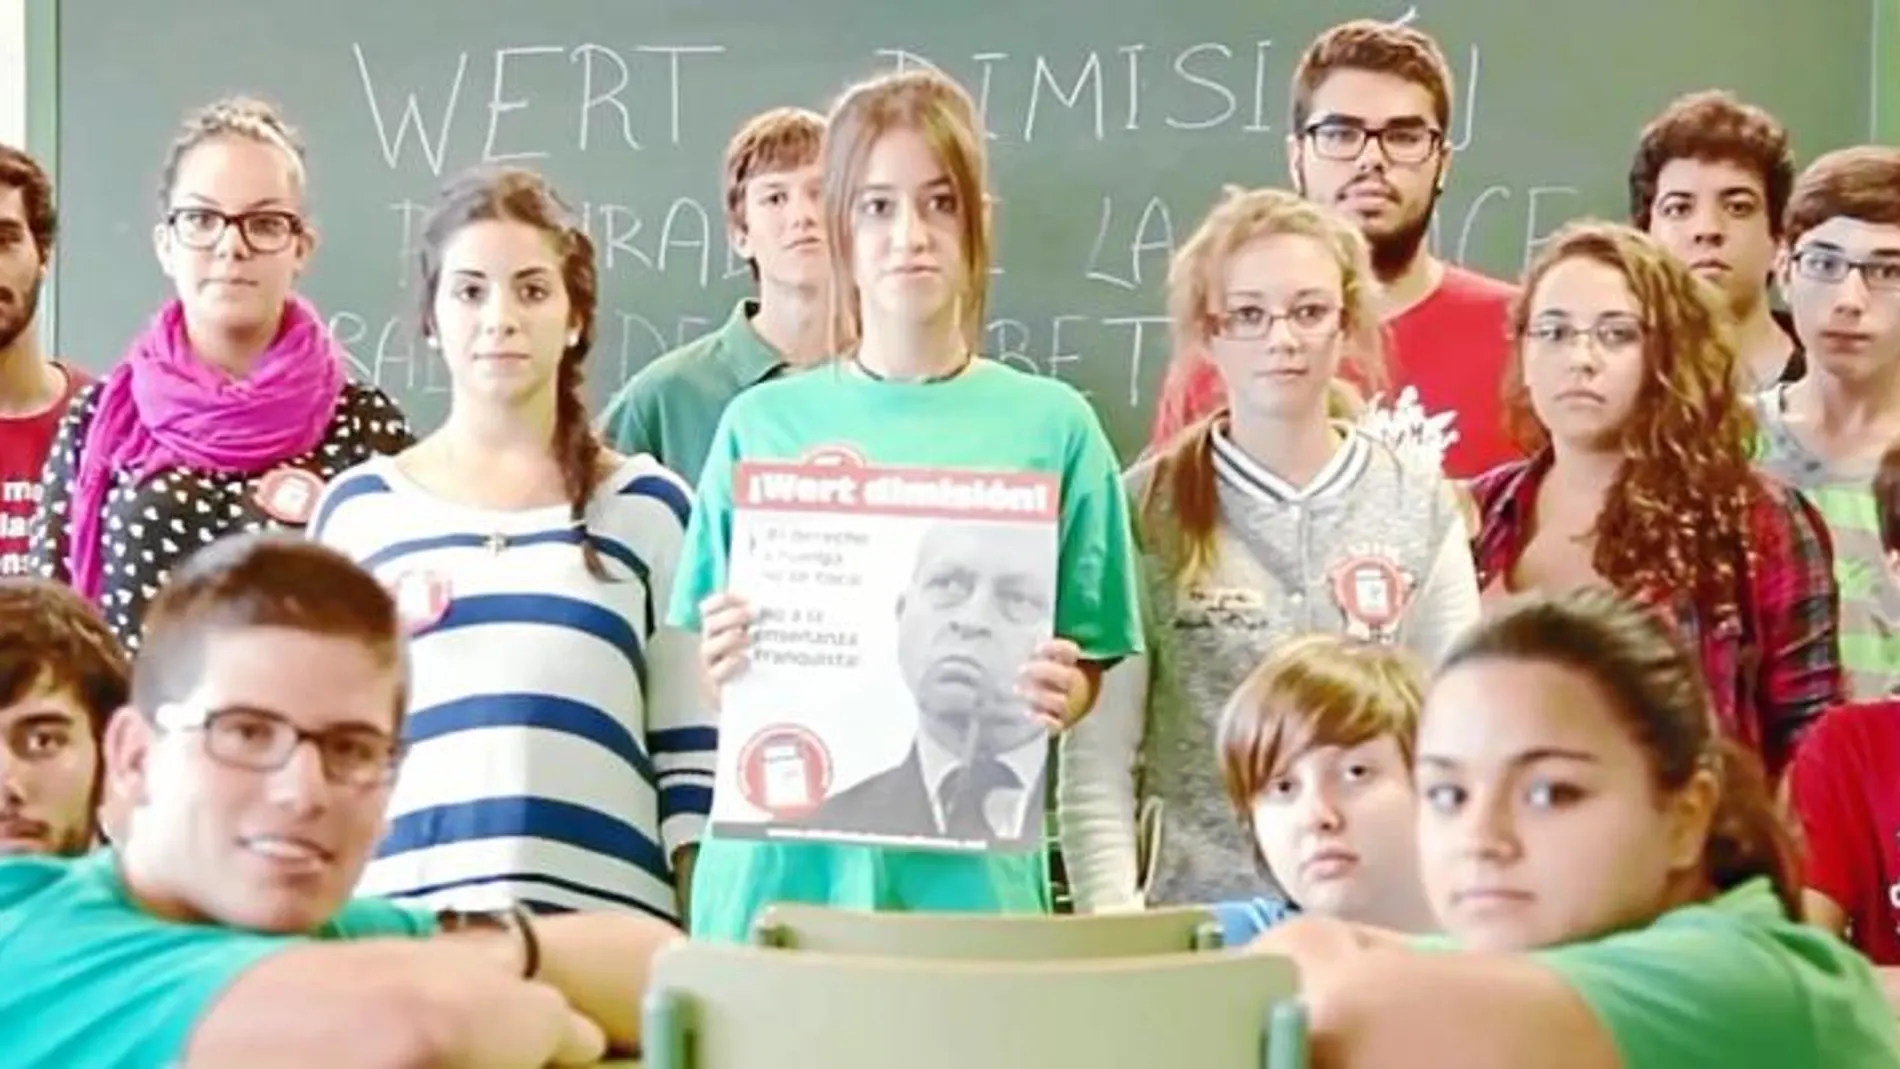 Alumnos menores de edad del Instituto tinerfeño de Los Realejos participan de forma voluntaria en un vídeo en el que llaman a la huelga educativa